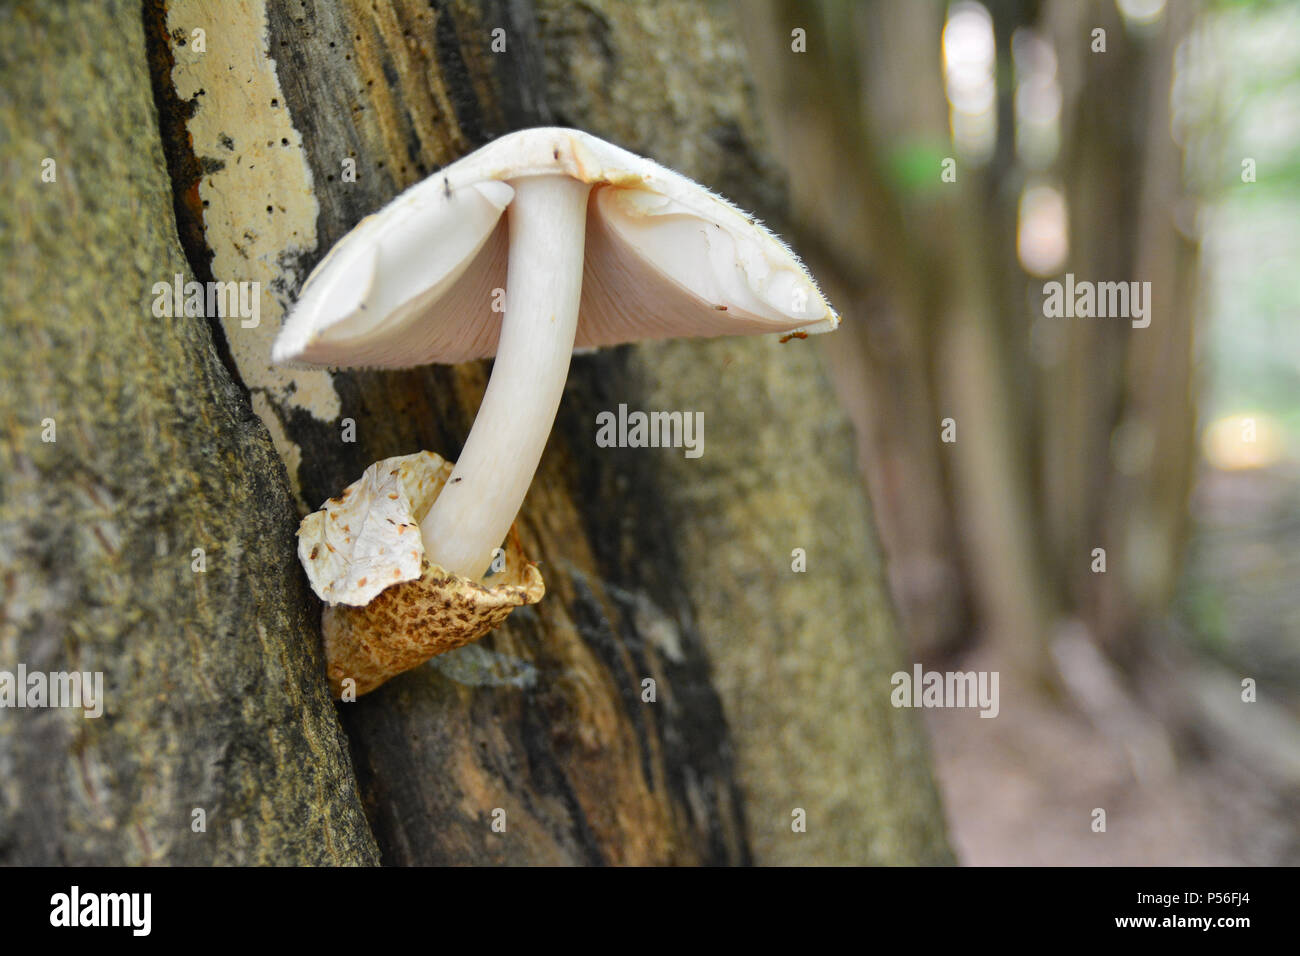 rare volvariella bombycina mushroom on the trunk of a tree Stock Photo